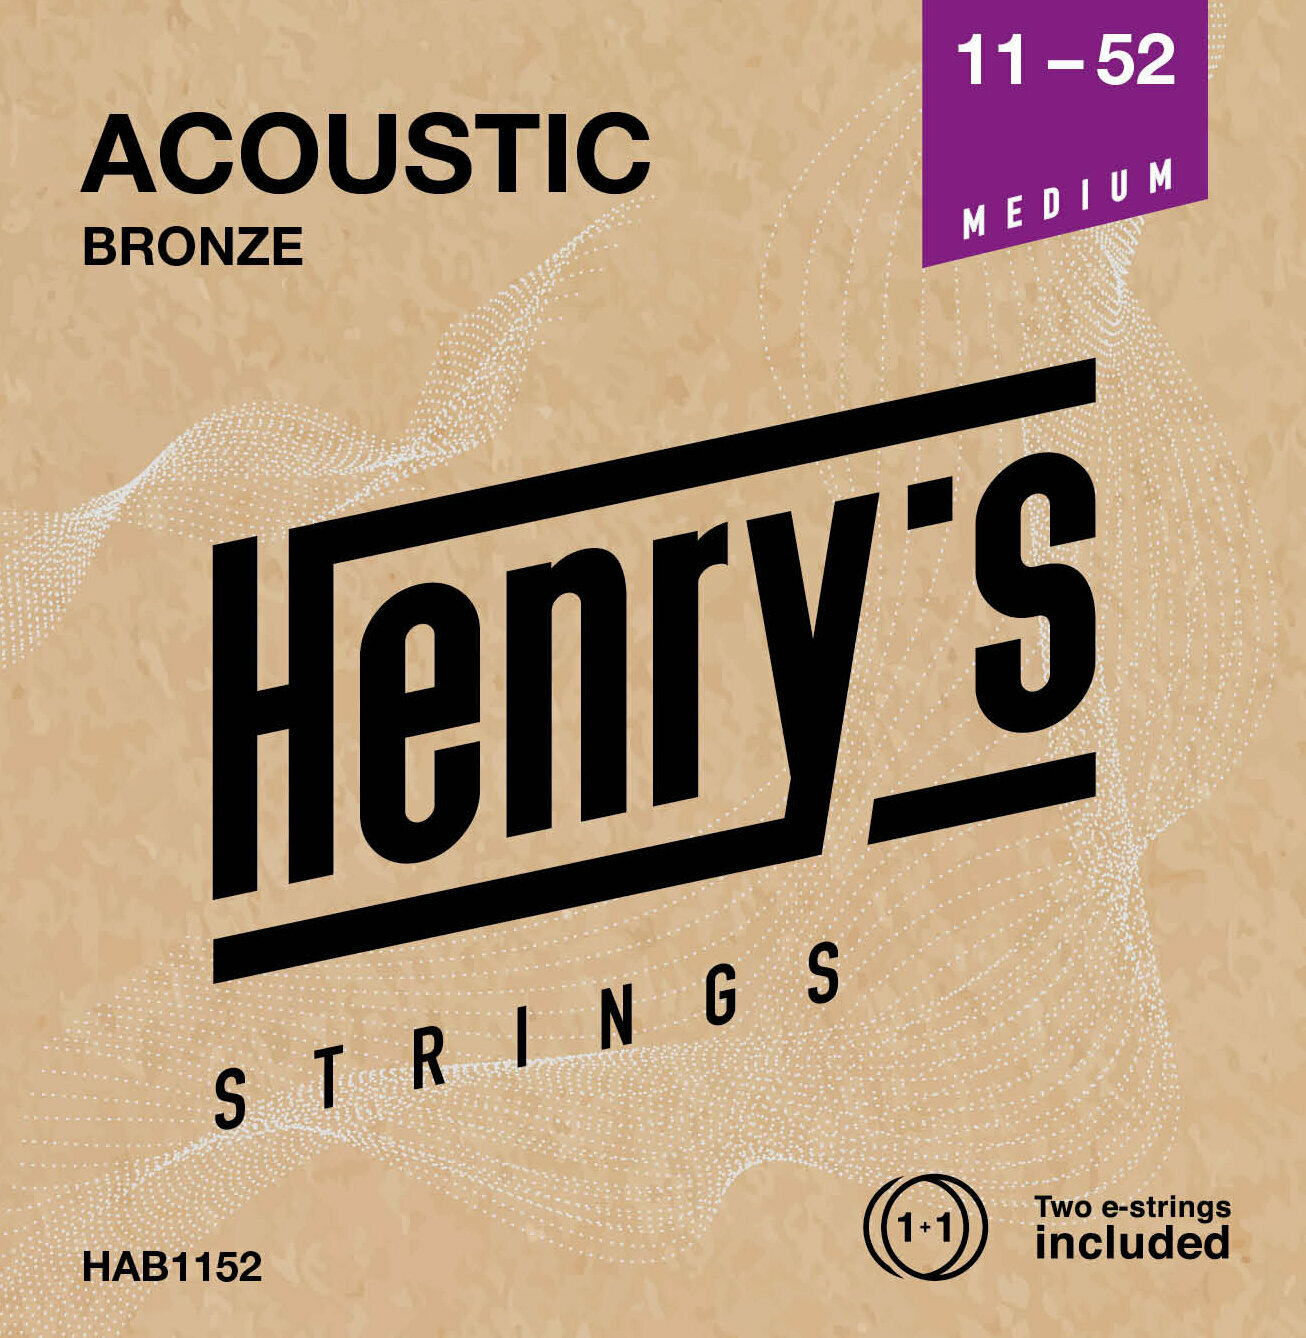 Guitar strings Henry's Bronze 11-52